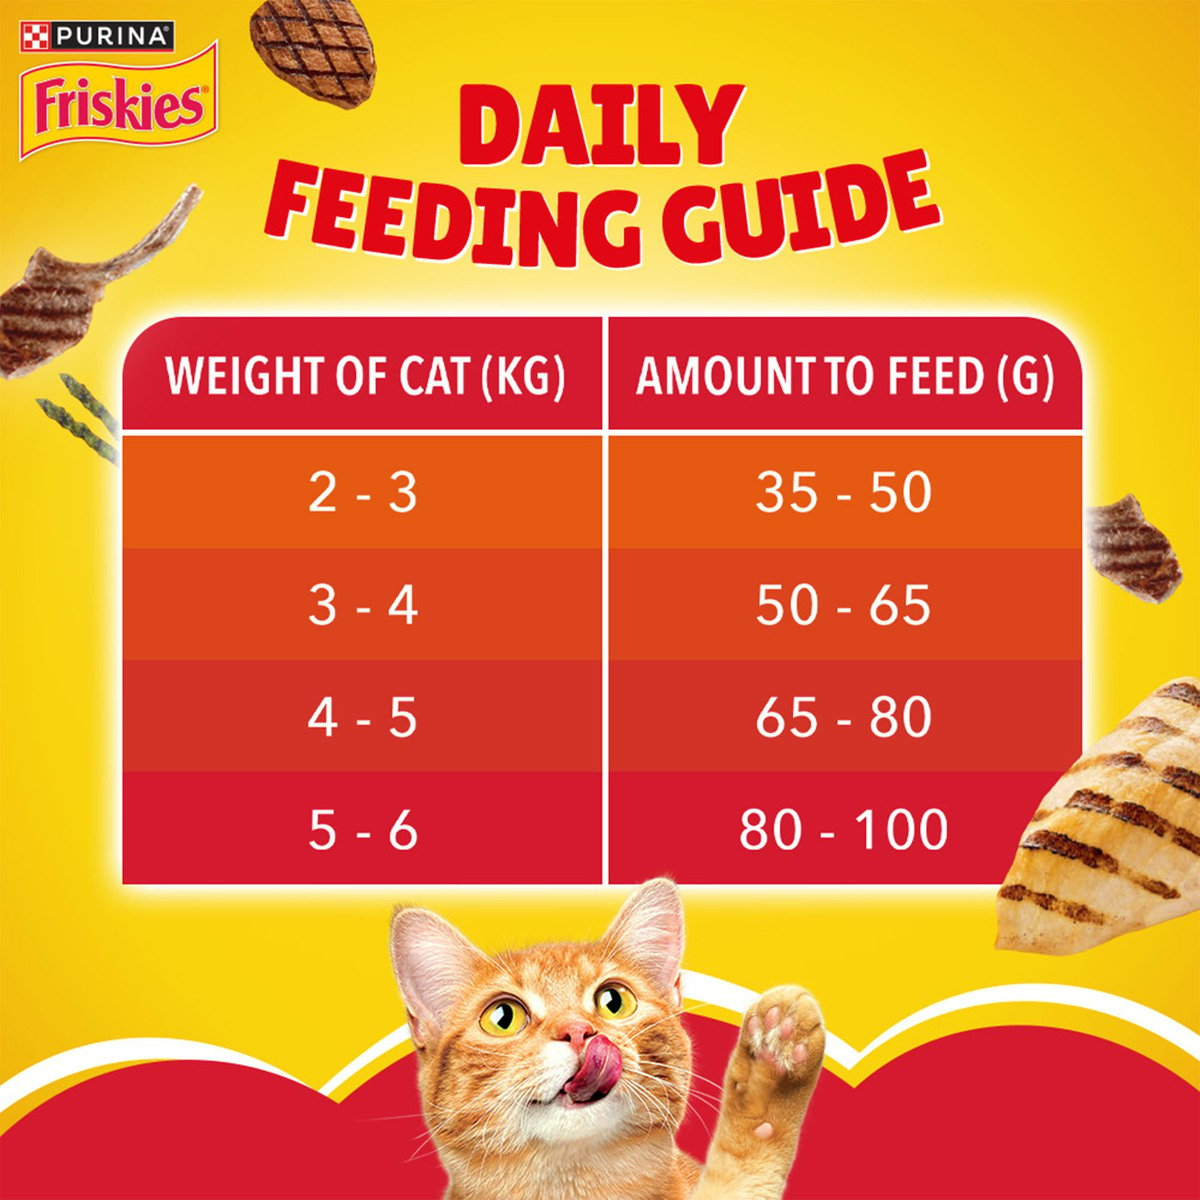 Purina Friskies Cat Food Meaty Grill Cat Food 2.5 kg